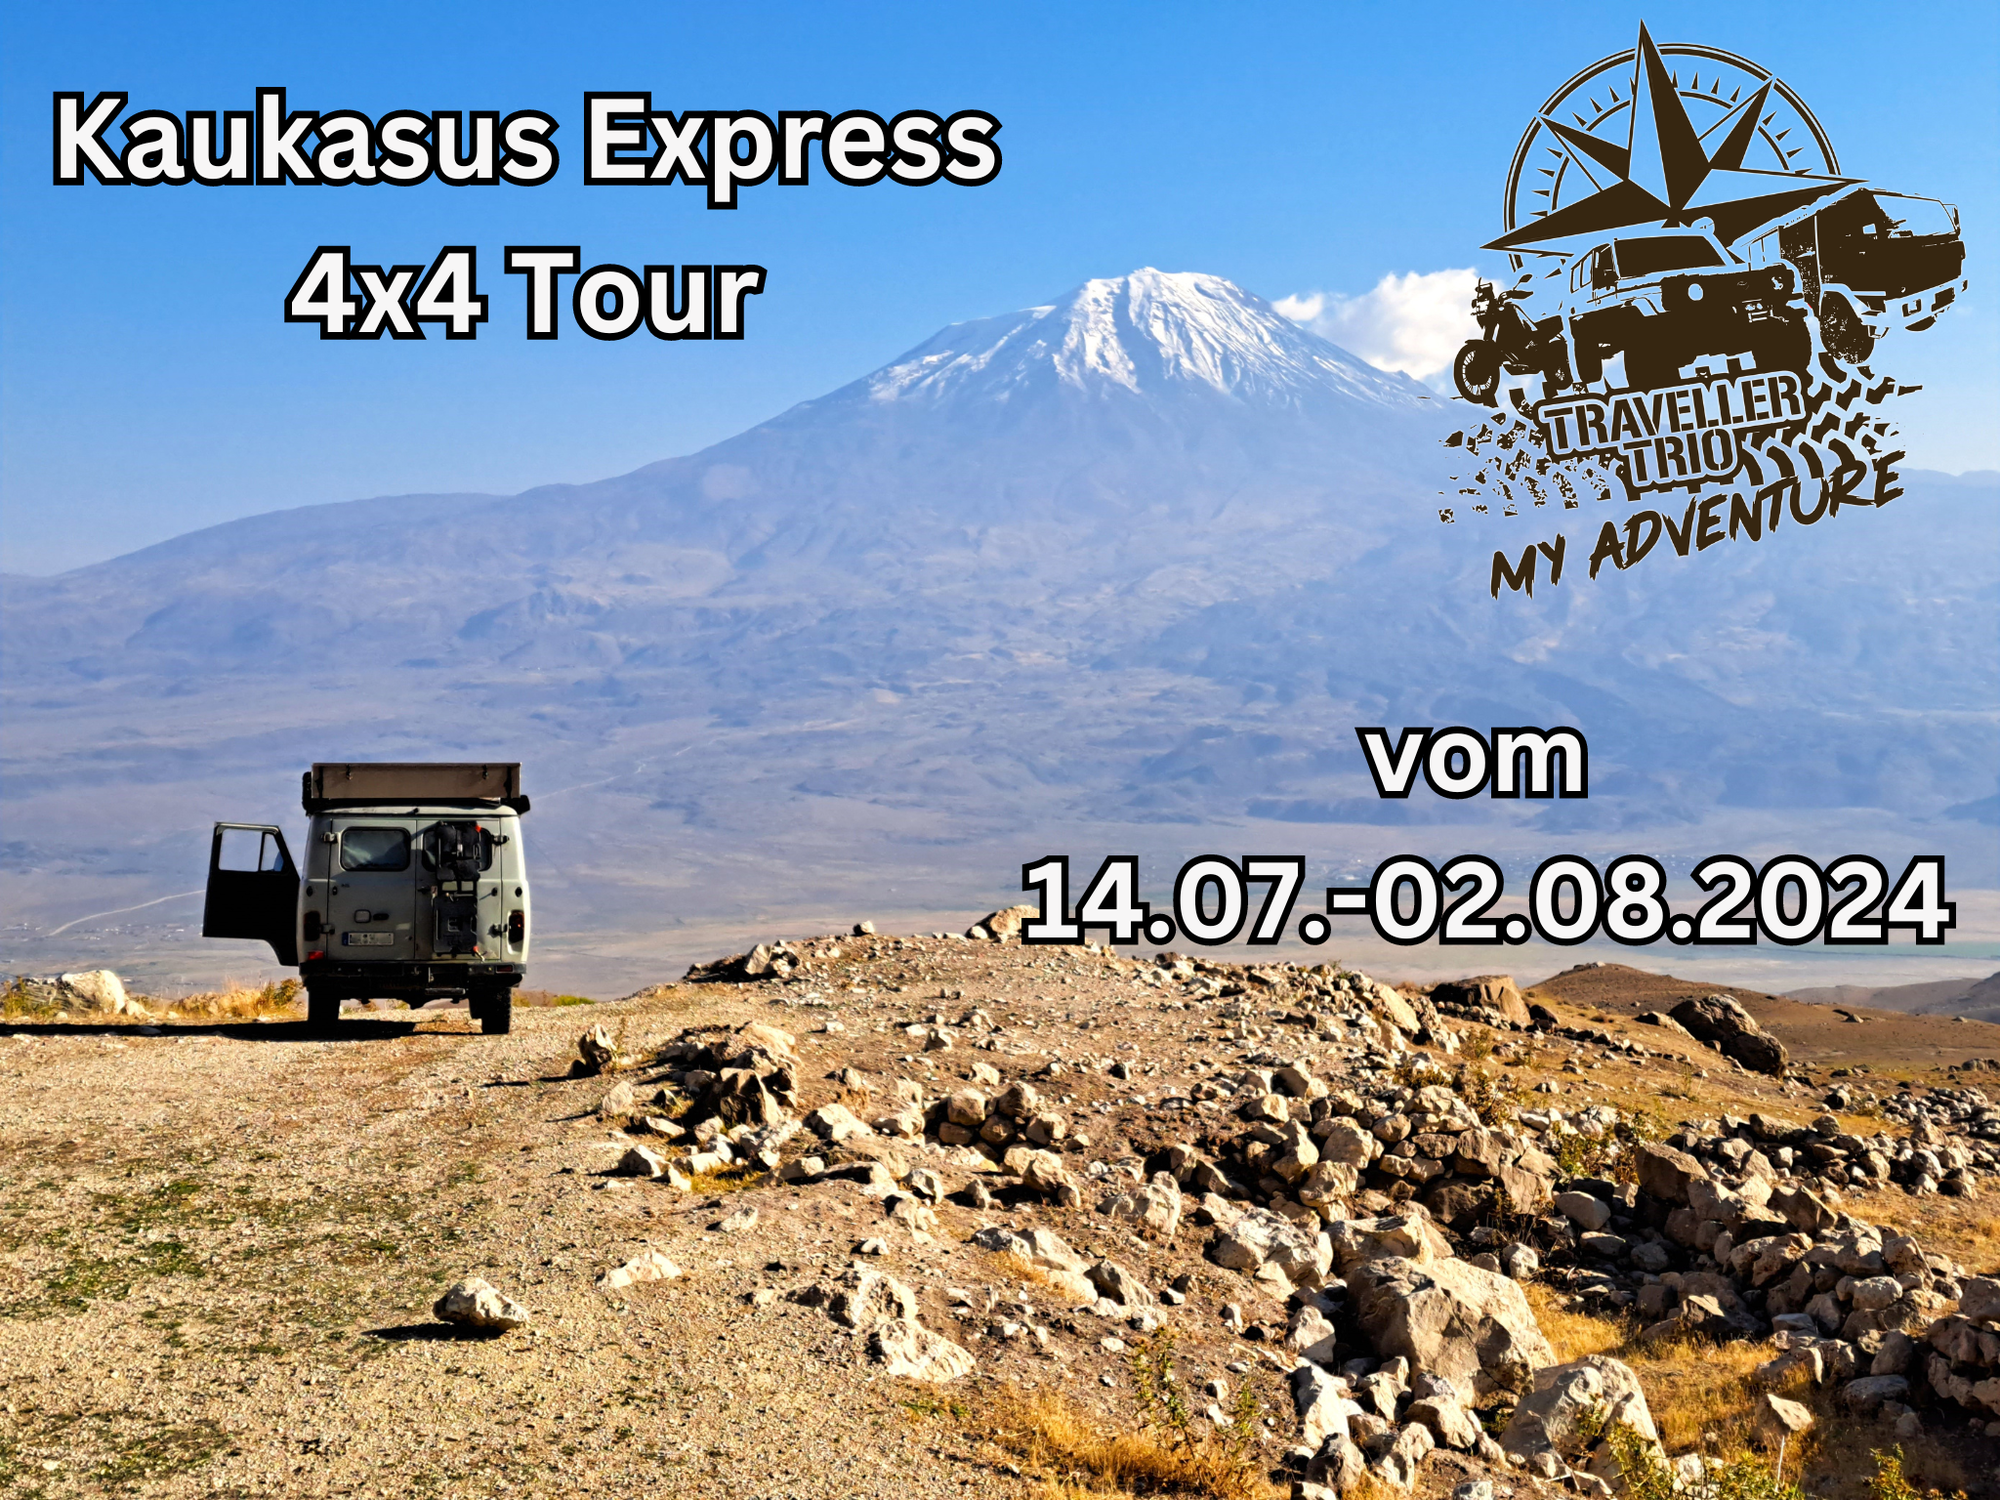 Kaukasus Express 4x4 Tour vom 14.07.-02.08.